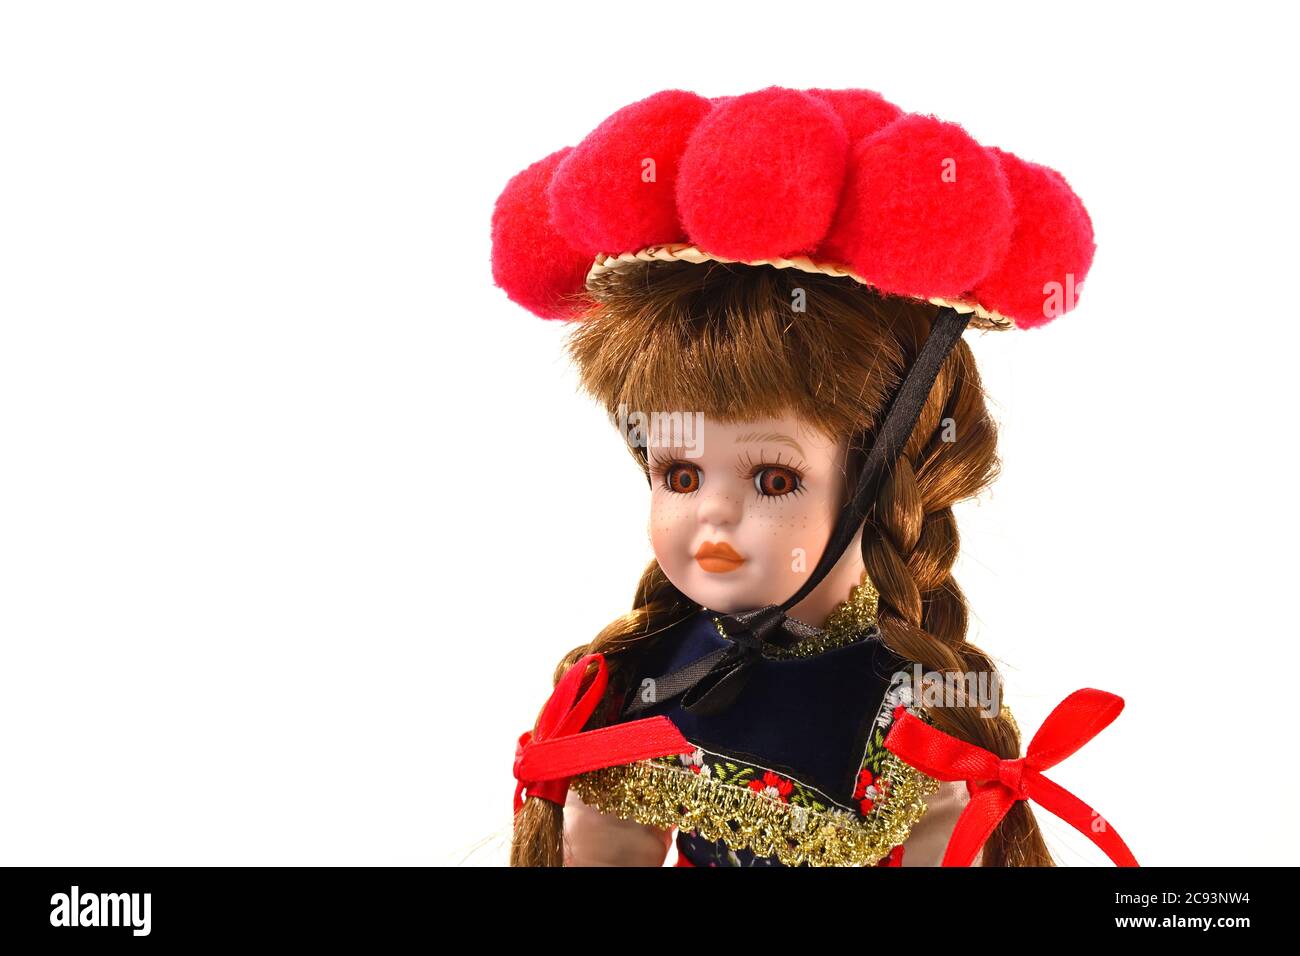 Souvenir typique de l'Allemagne. Poupée Black Forest en costume folklorique avec Bollenhut rouge, une adresse traditionnelle. Banque D'Images